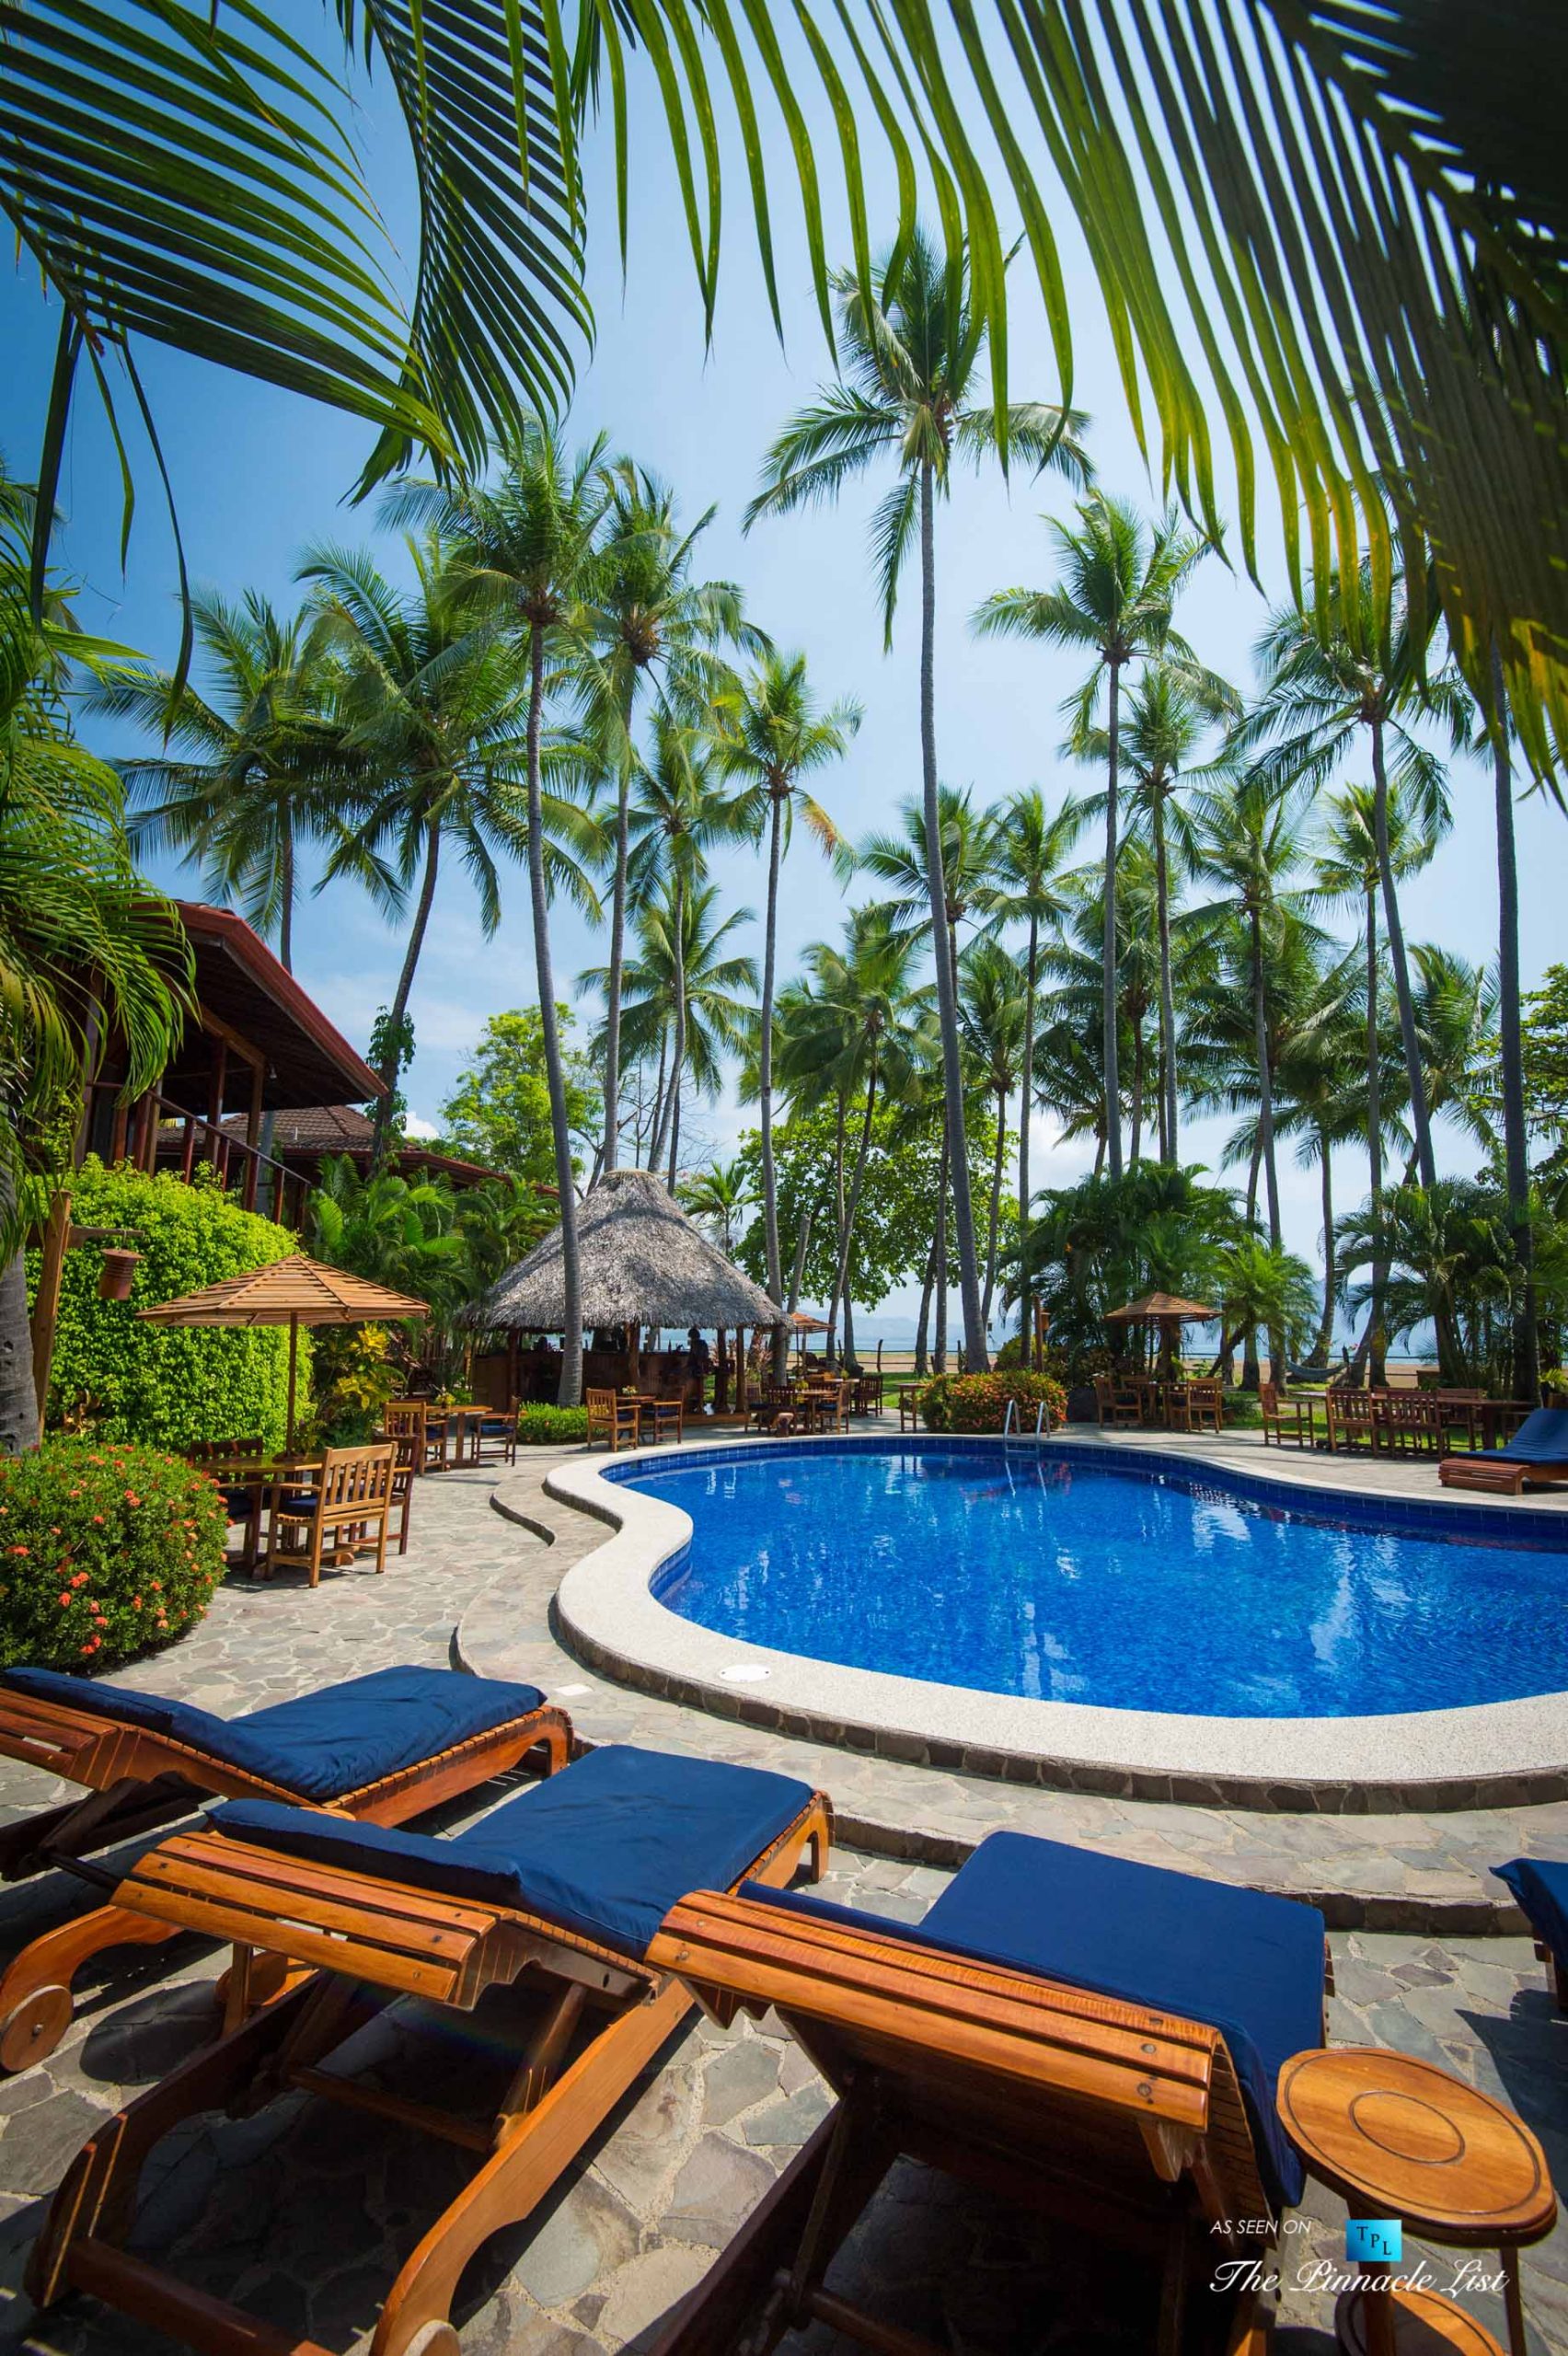 Tambor Tropical Beach Resort - Tambor, Puntarenas, Costa Rica - Poolside Lounge